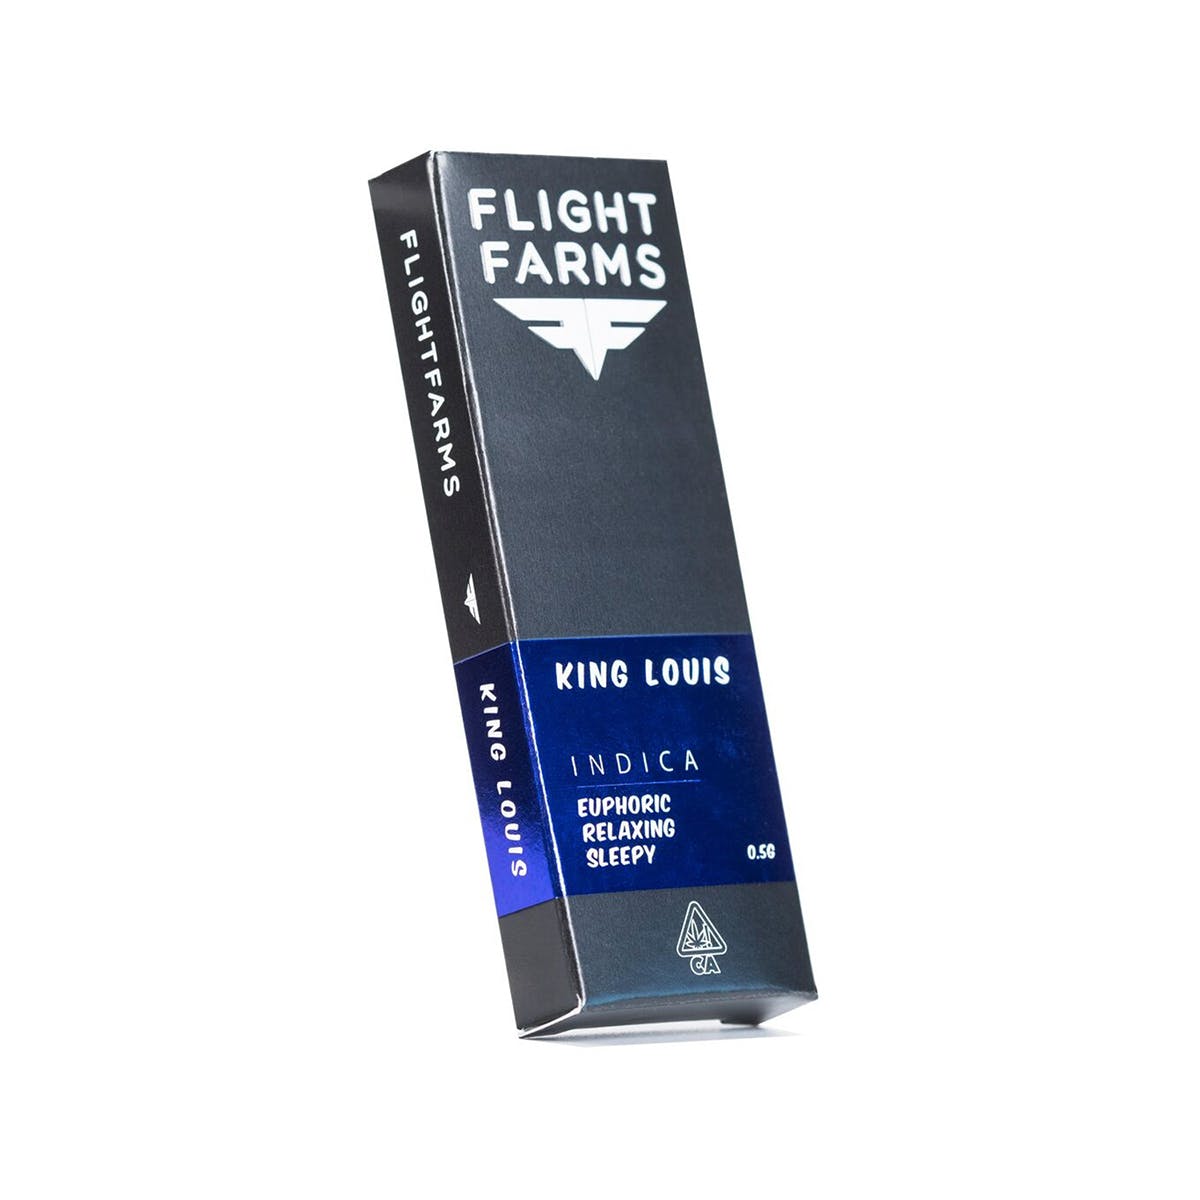 FLIGHT FARMS F6 Cartridge - King Louie Xlll 500mg